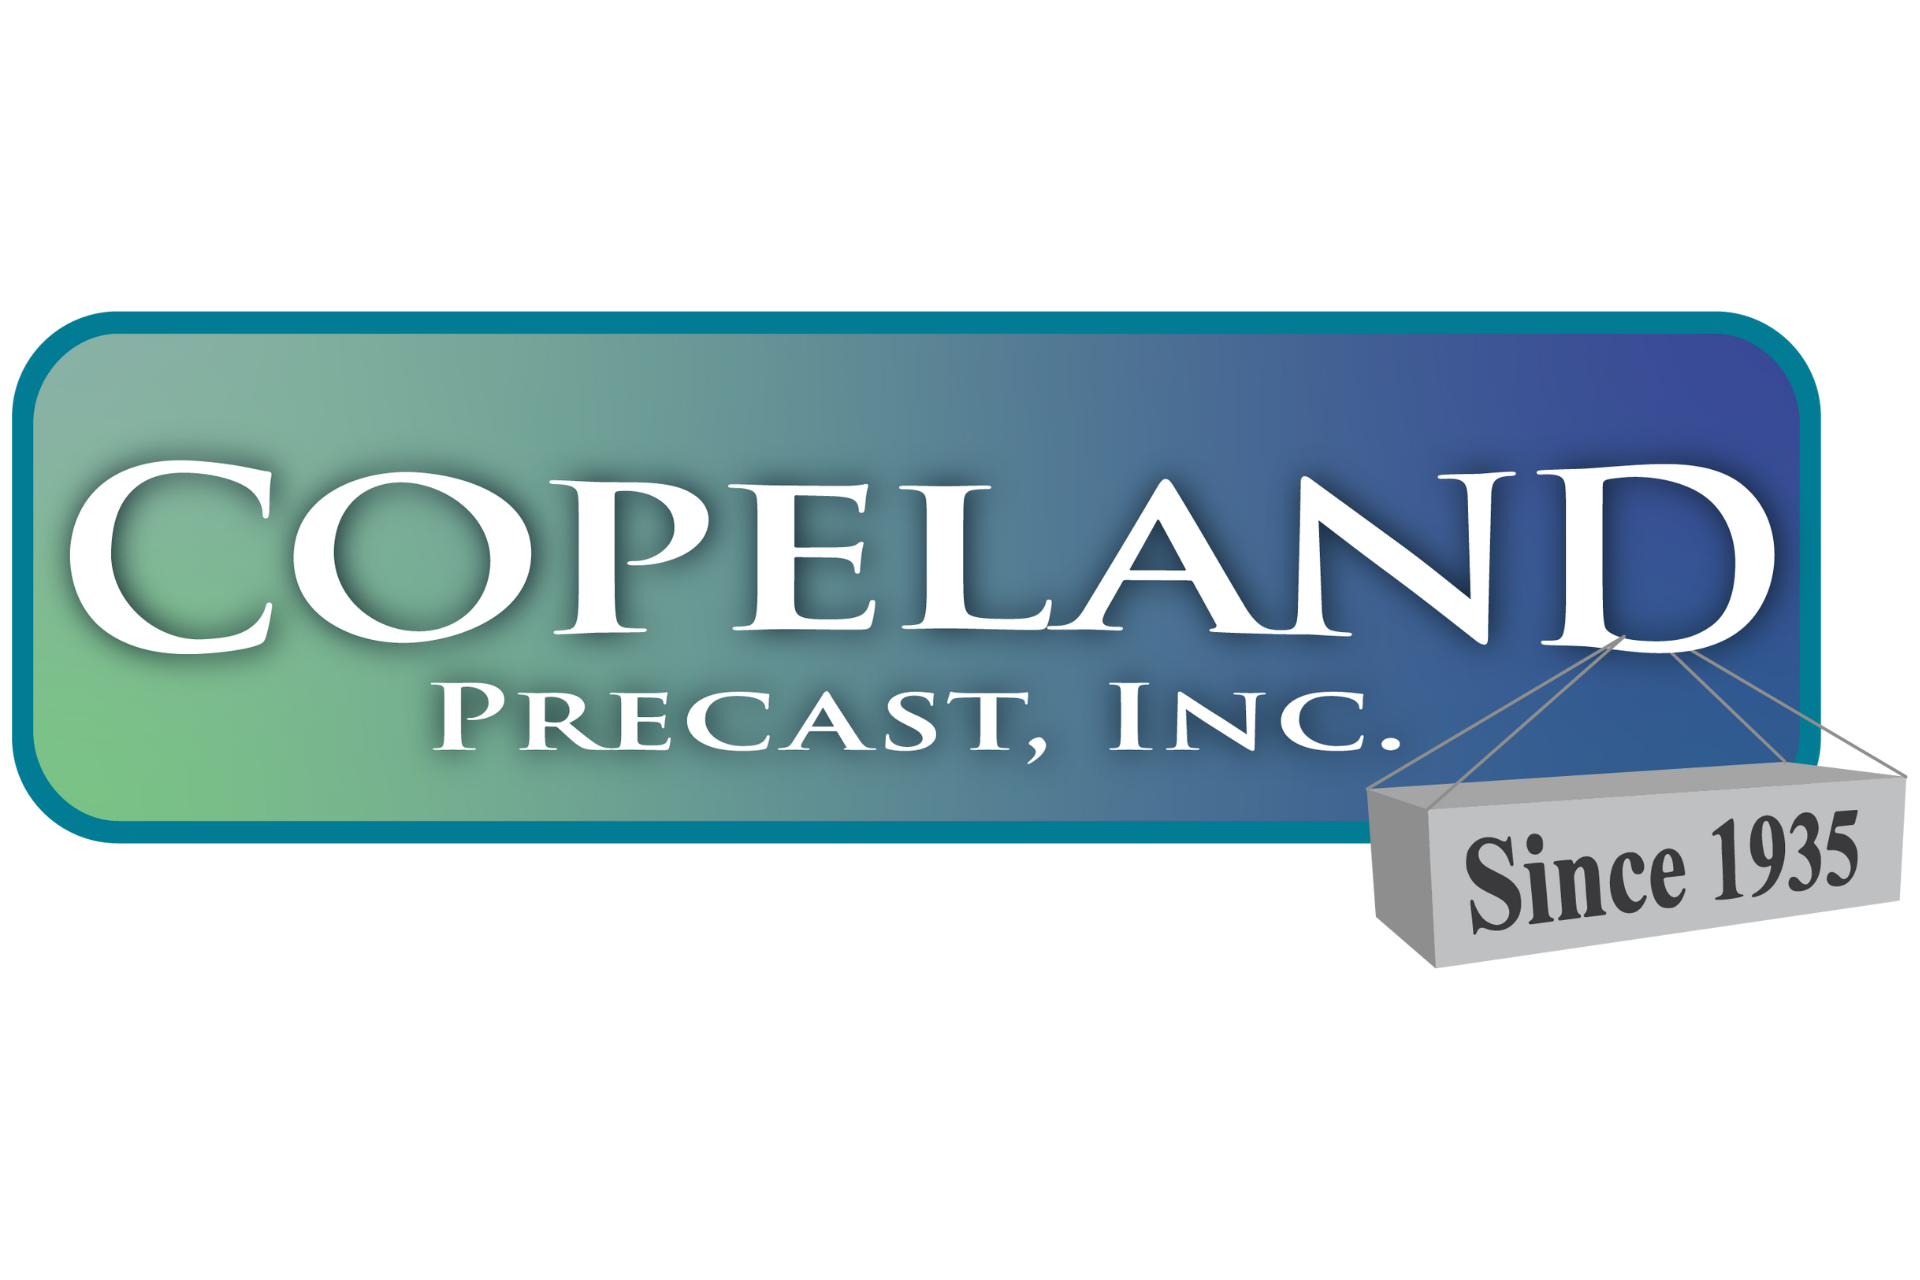 Copeland Precast, Inc. Since 1935